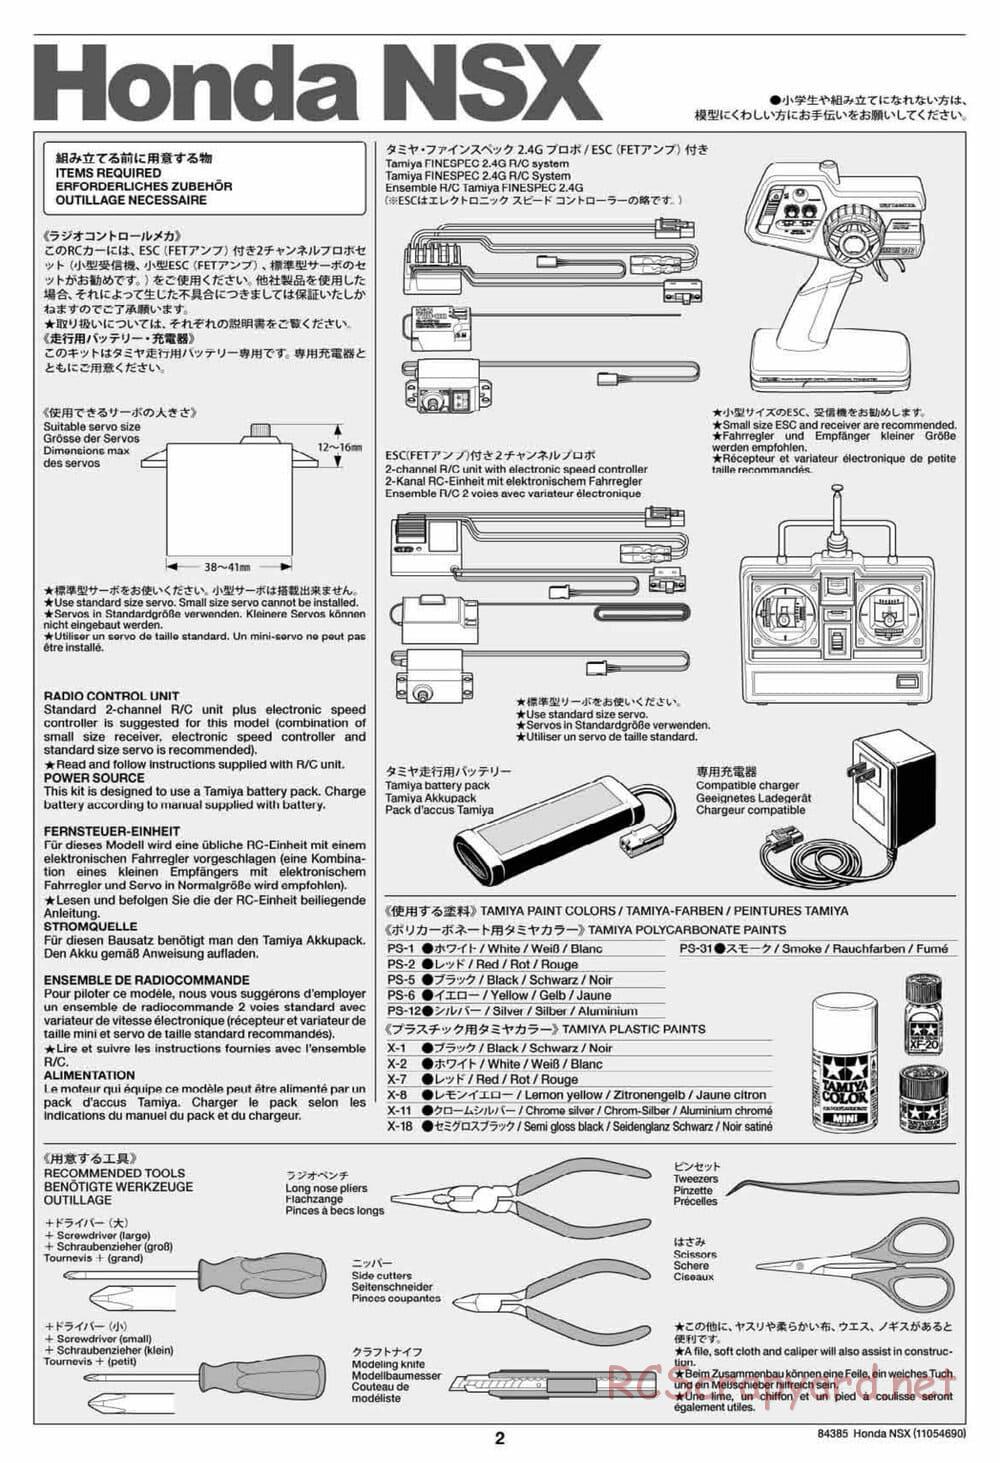 Tamiya - Honda NSX - Group-C Chassis - Manual - Page 2